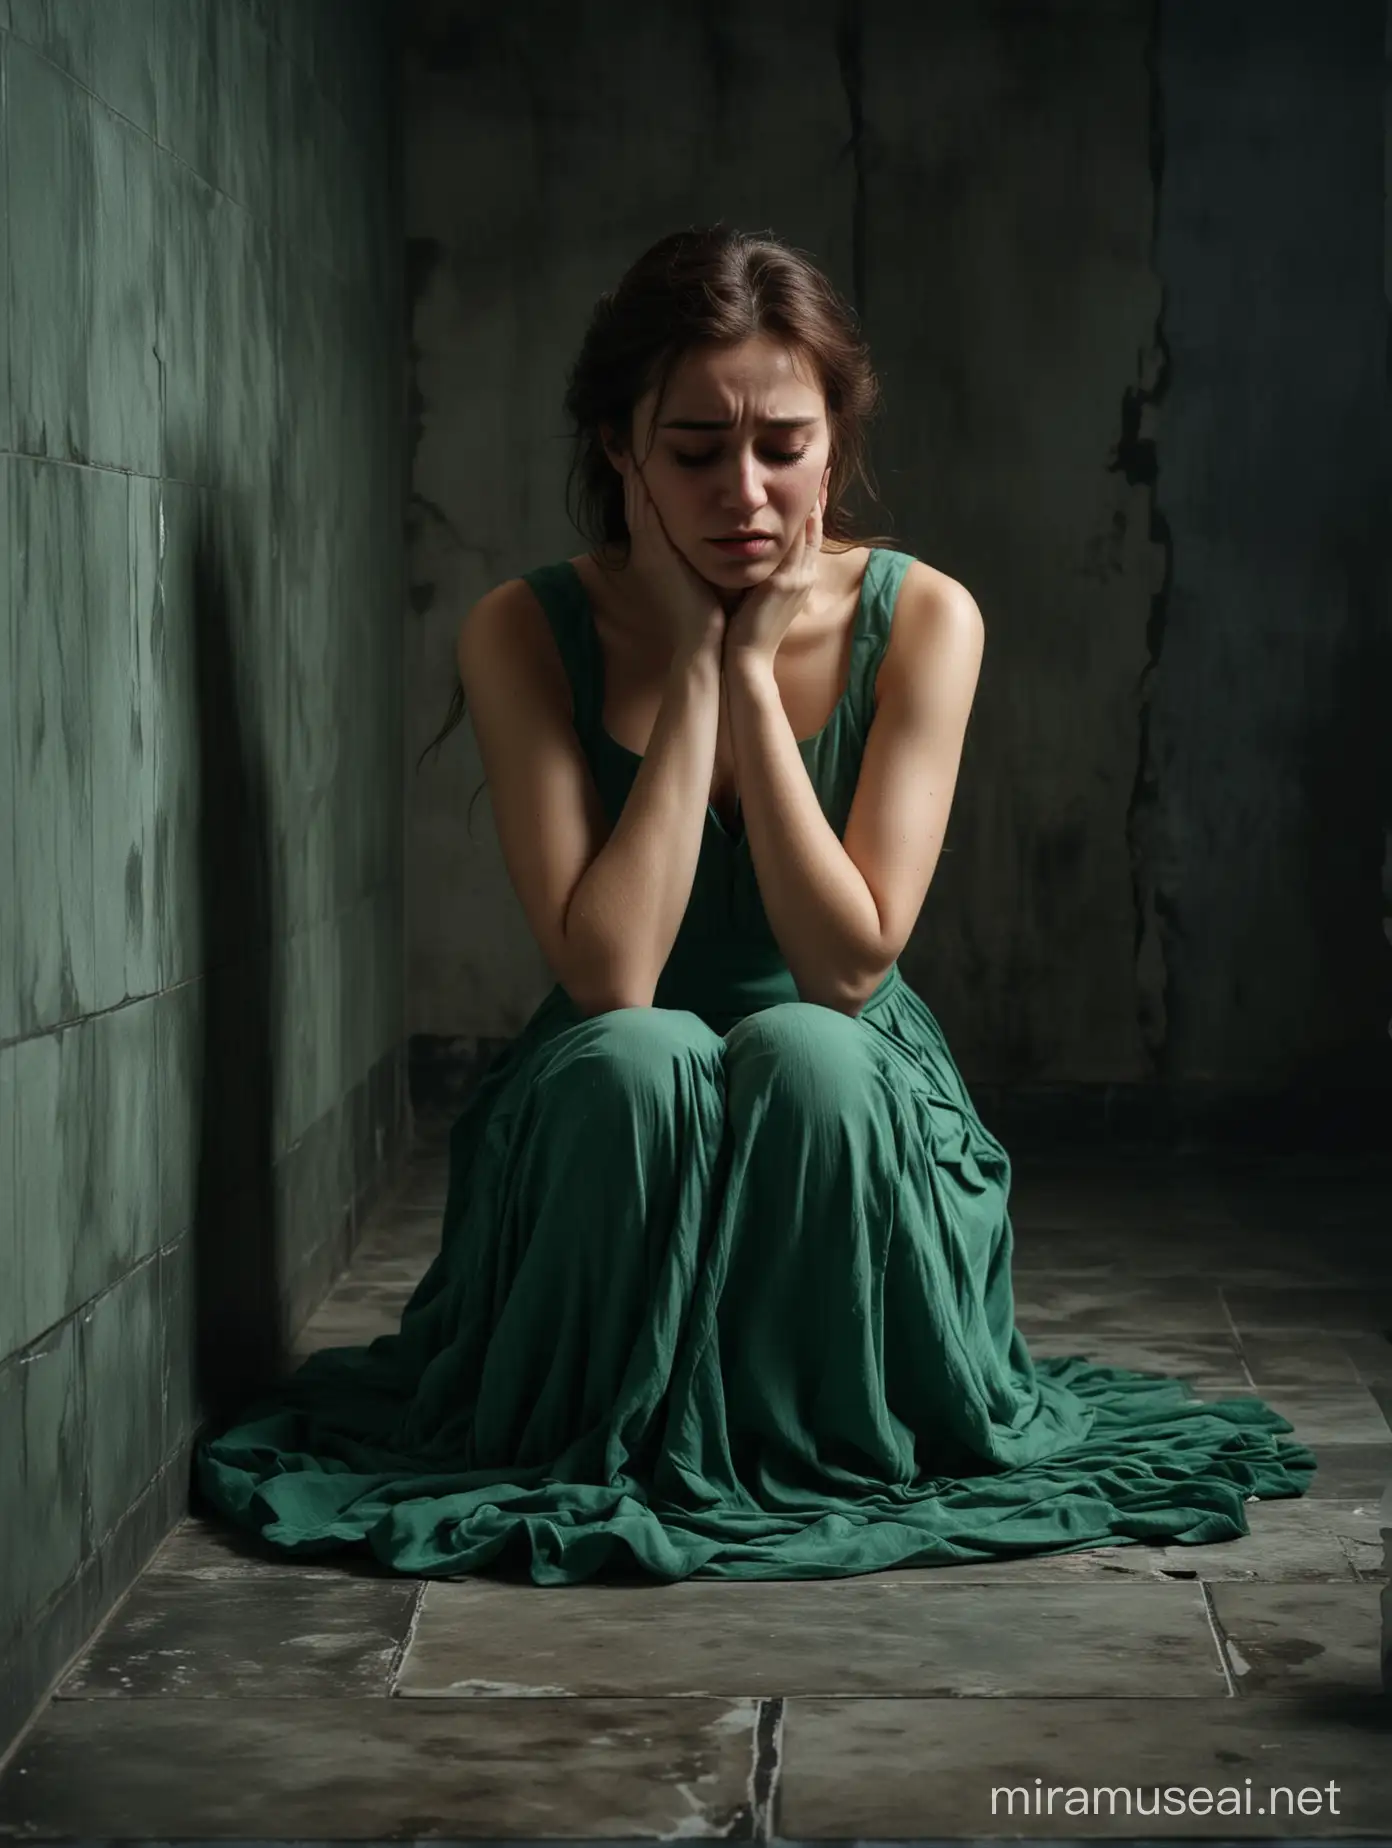 Beautiful Woman in Green Dress Crying in Dark Room